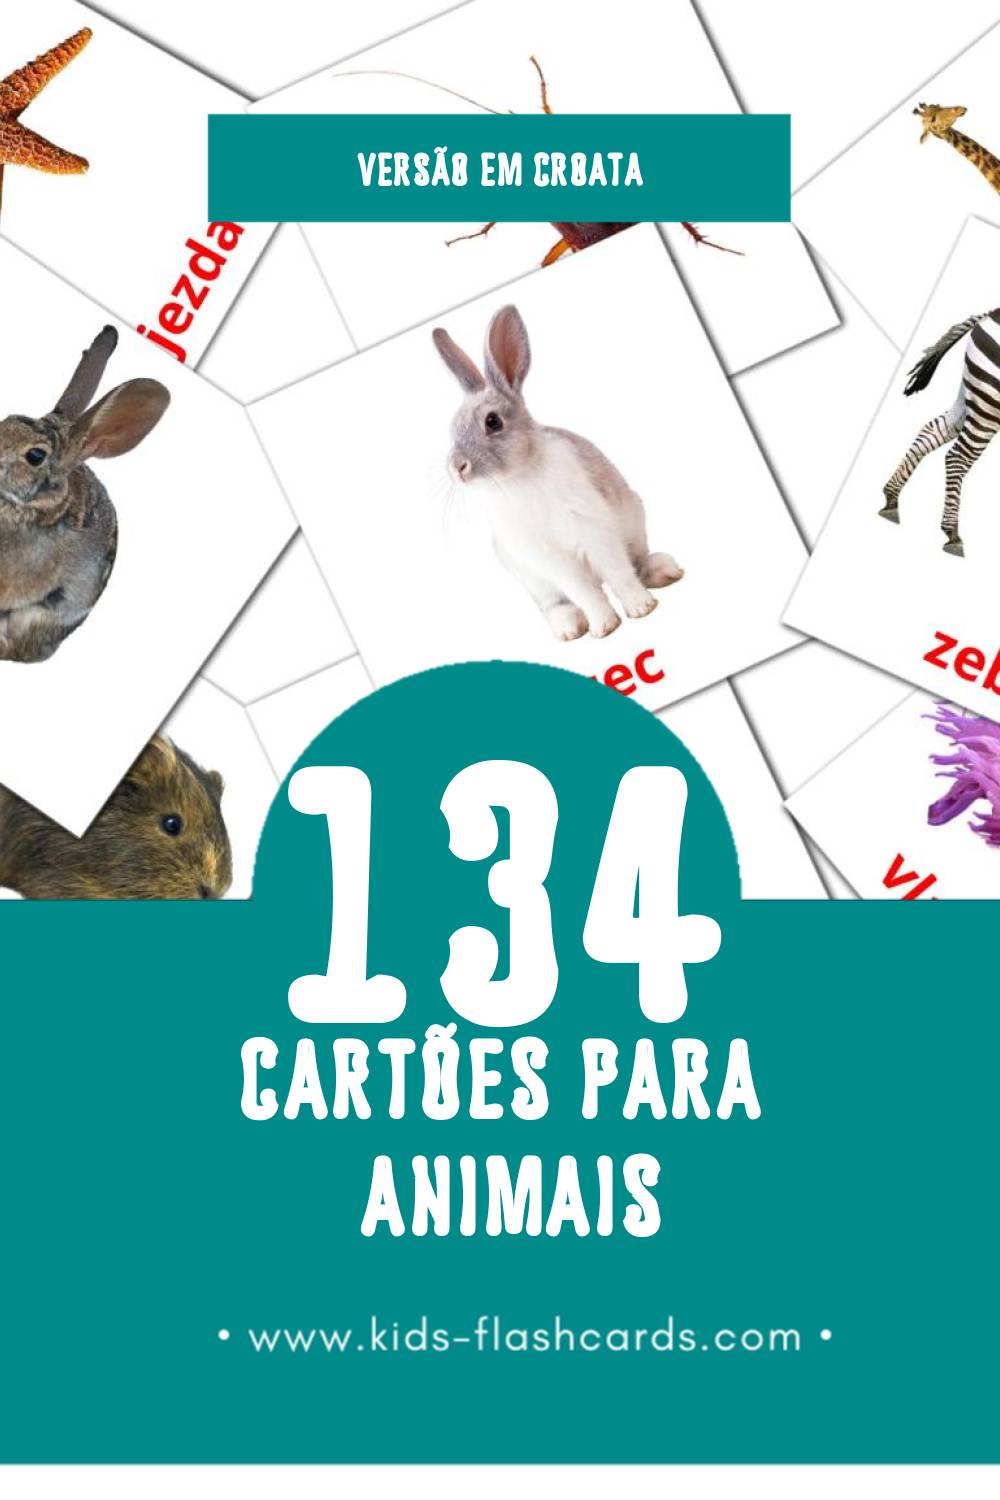 Flashcards de Životinje Visuais para Toddlers (134 cartões em Croata)